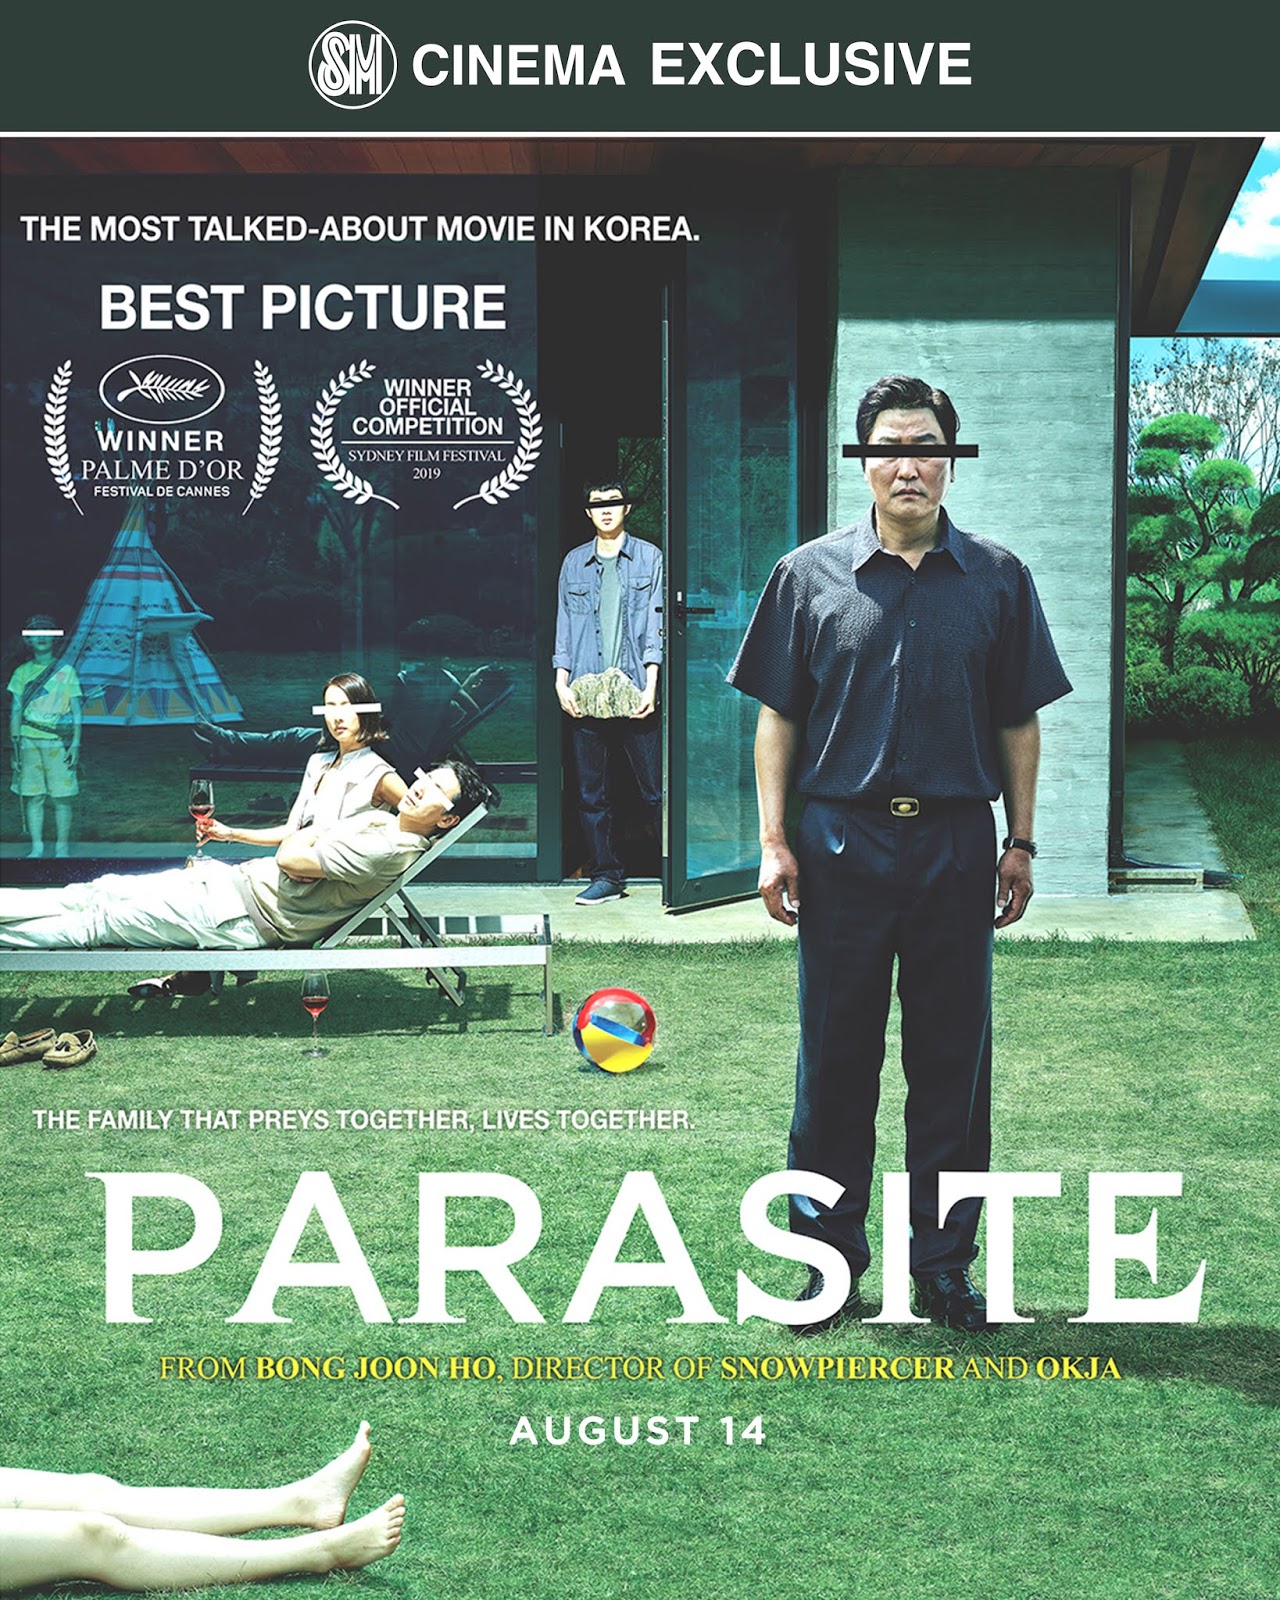 Lemon Greentea Sm Cinema Exclusively Brings Parasite Winner Of